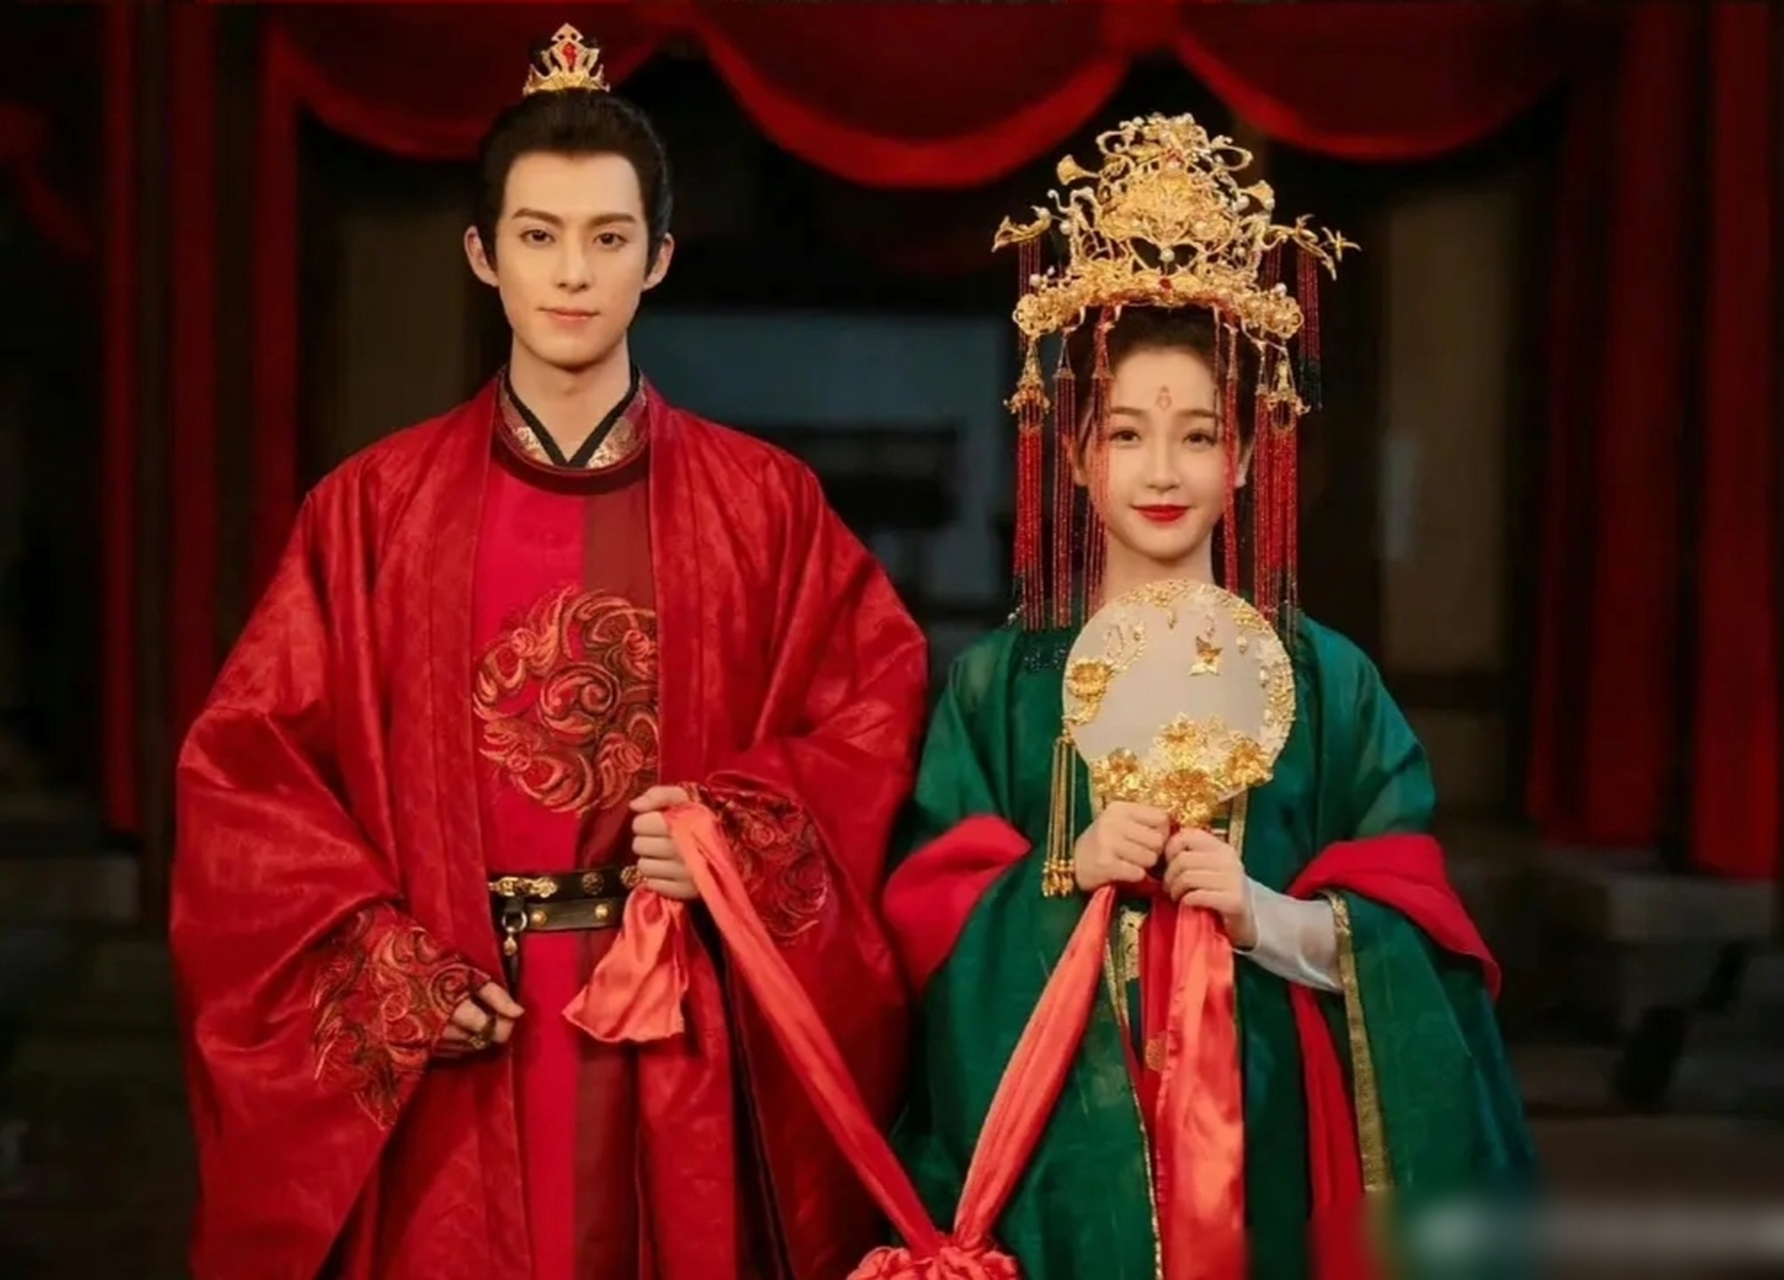 热播剧古装婚服大赏,红男绿女,大红色镶金边符合中国传统,也确实好看